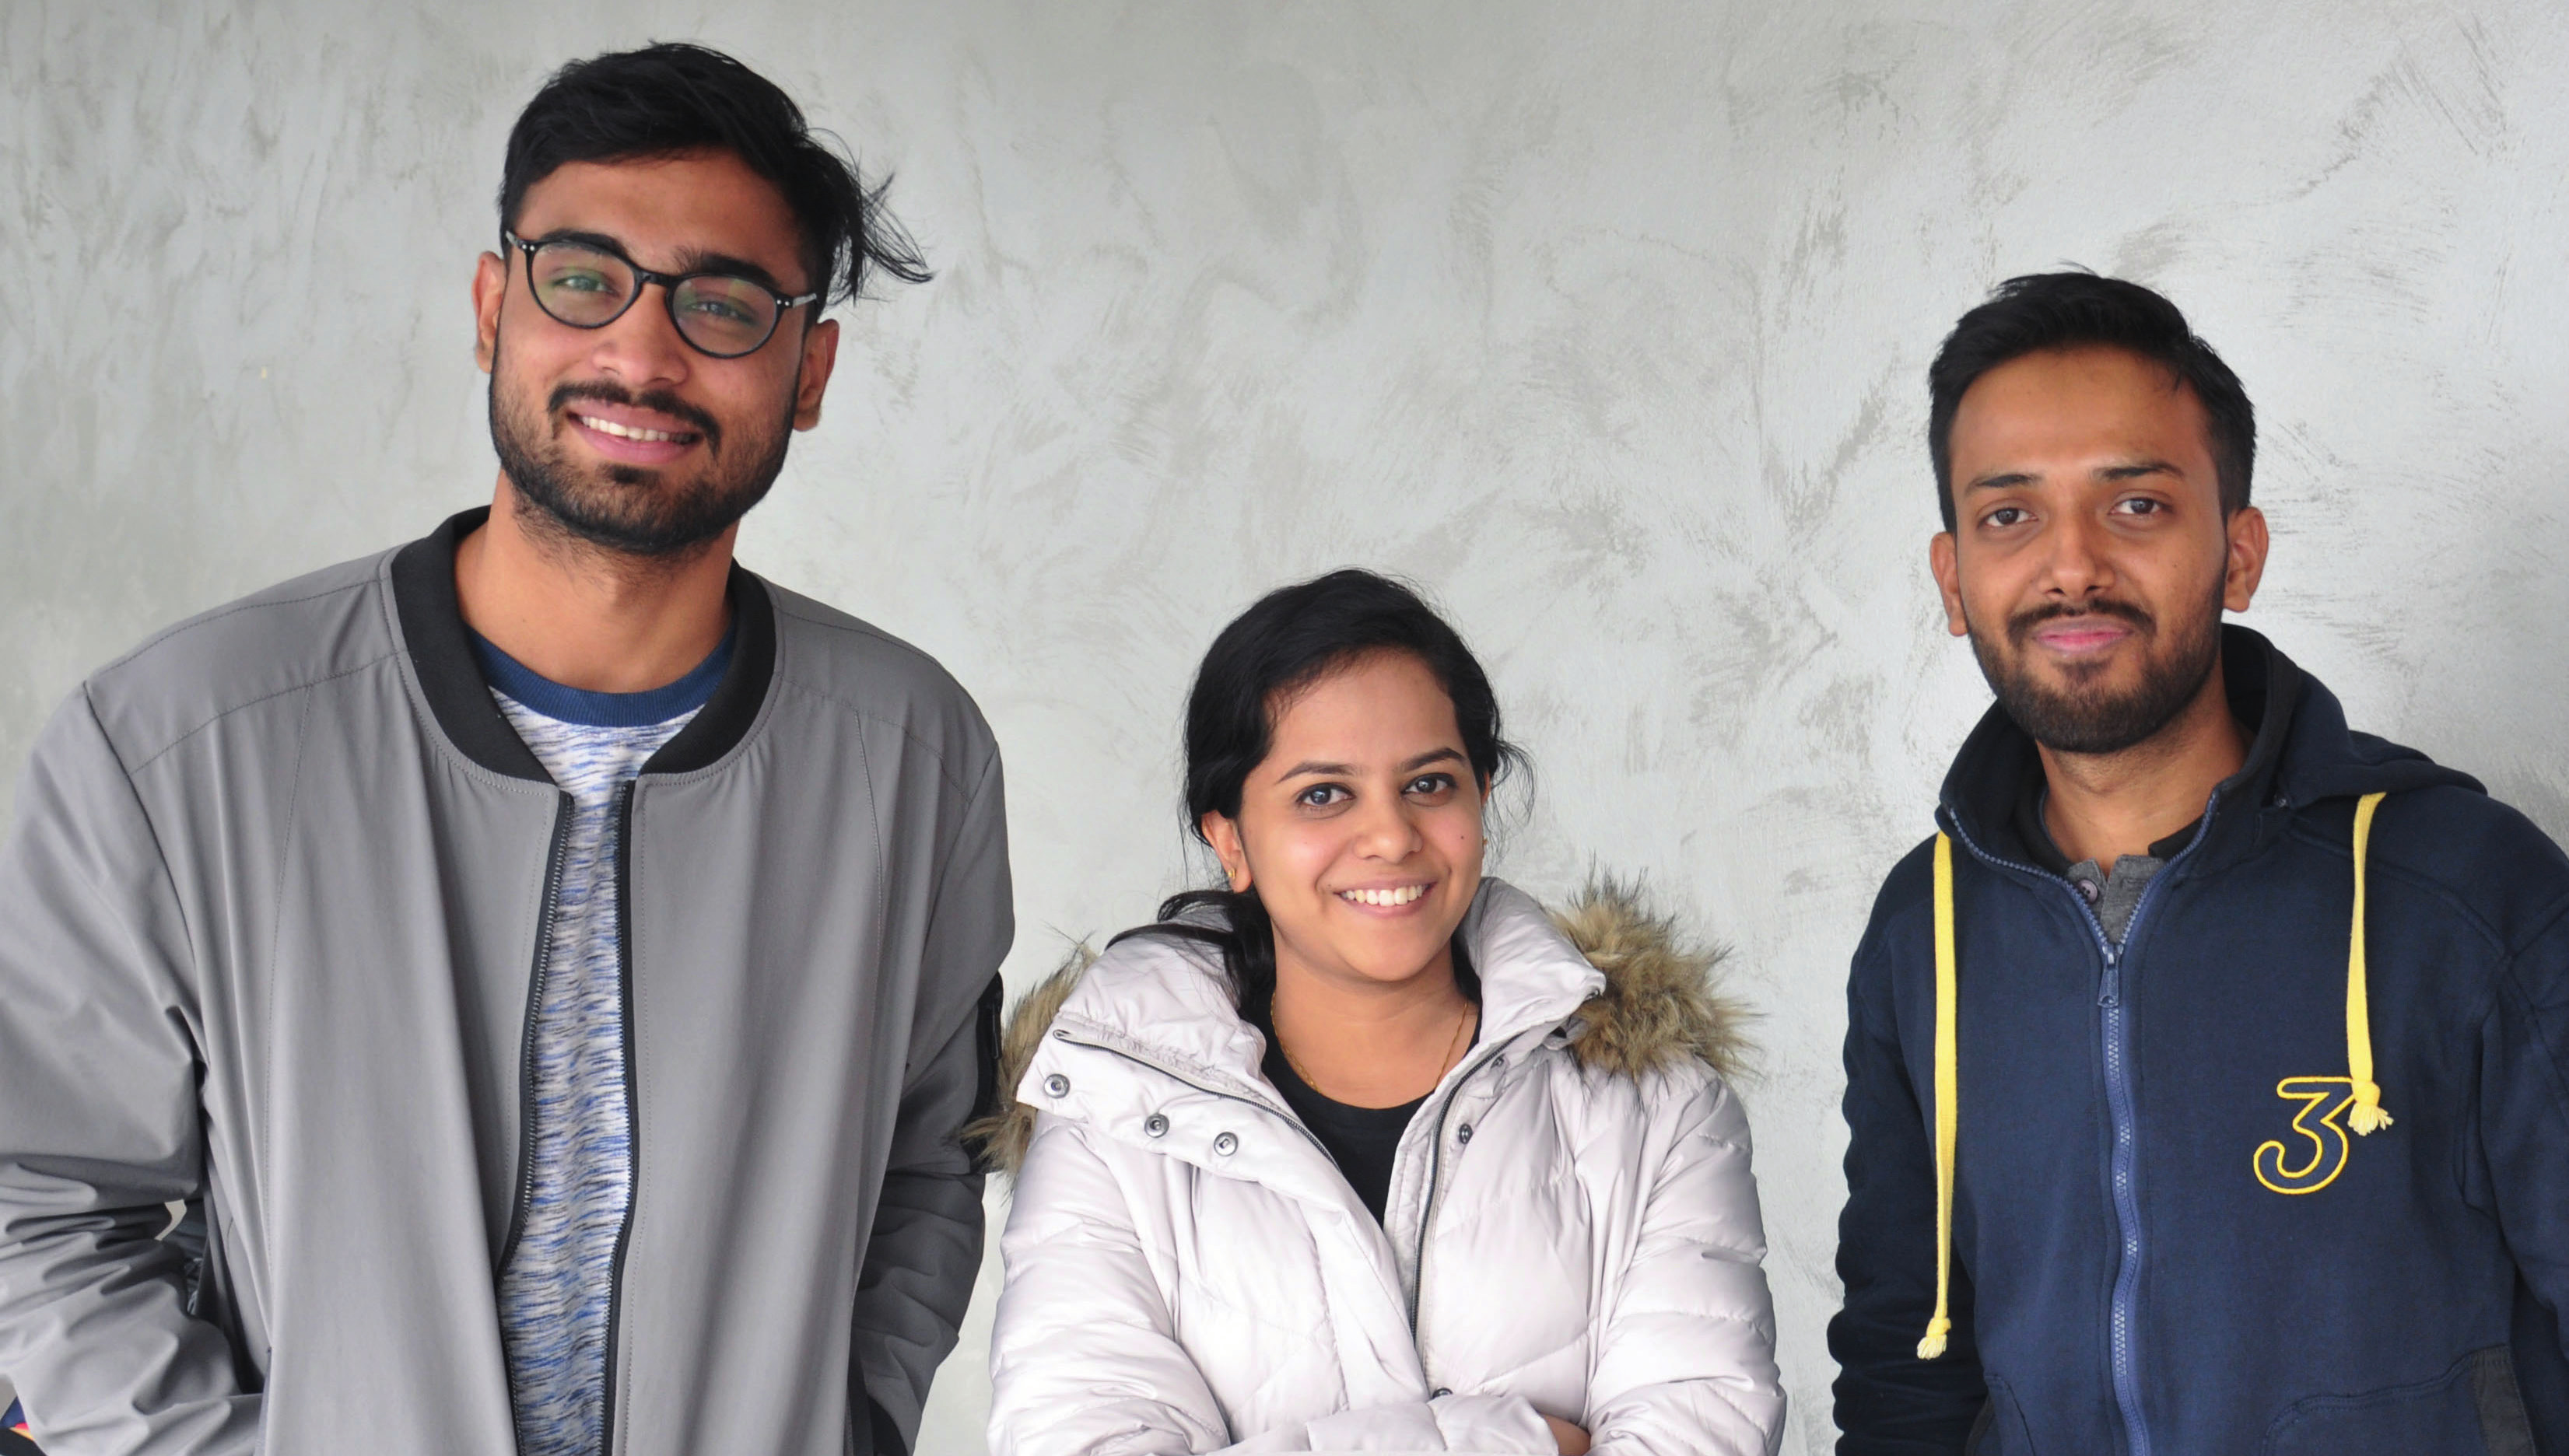 Apoorva Ravishankar (Mitte) mit ihren Kommilitonen Vikrant Singh (links) und Barun Kumar. Alle drei sind aus Indien gekommen, um in Paderborn zu studieren. (Foto: Luca Jurczyk)